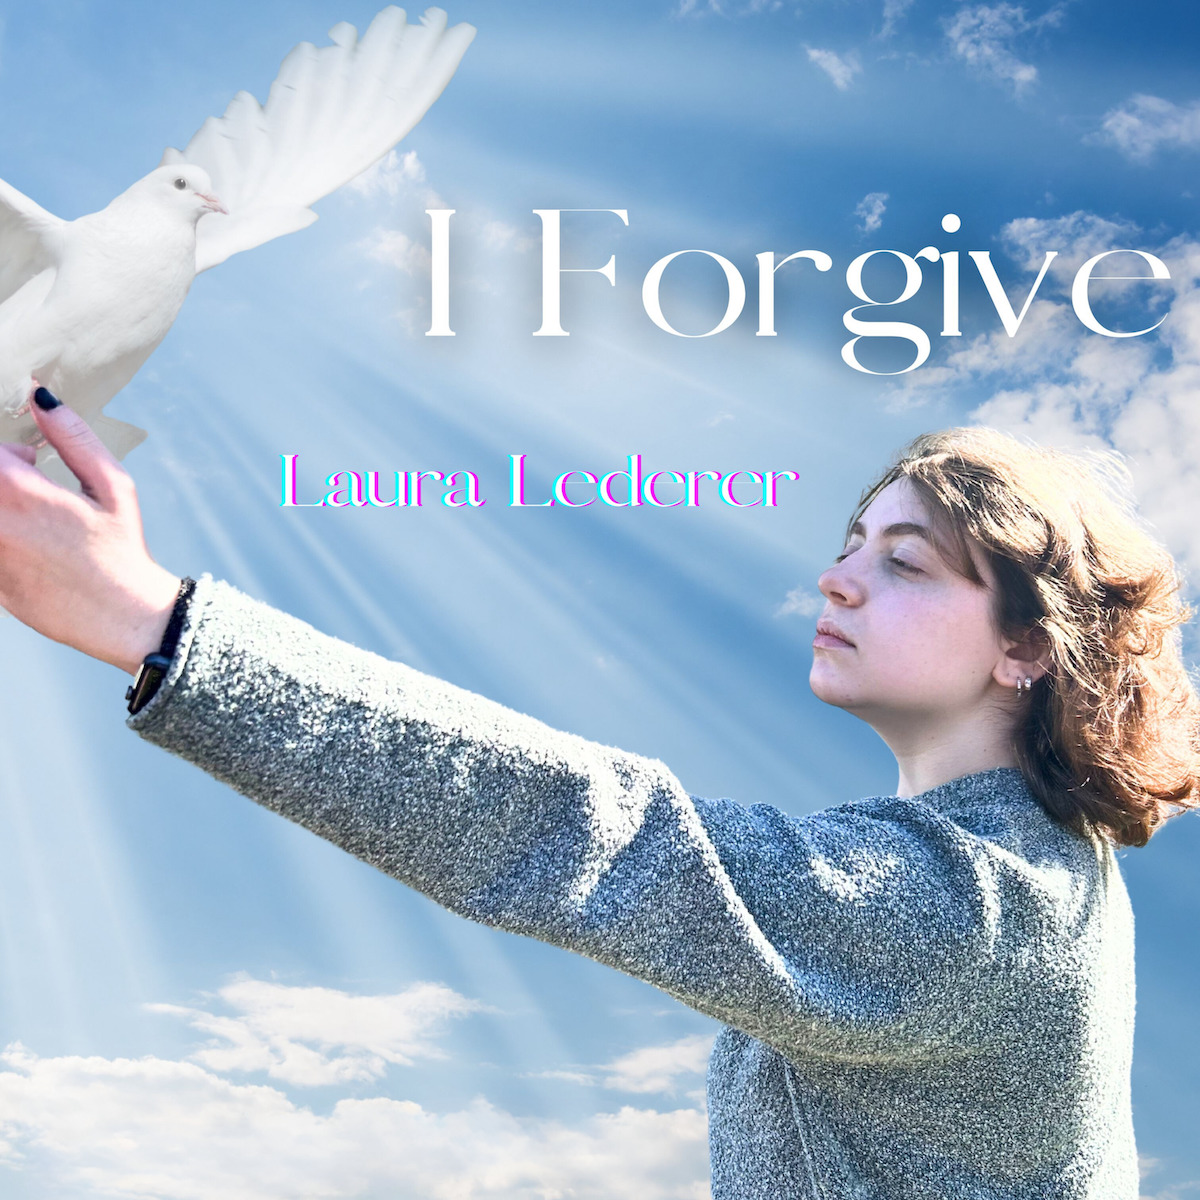 DEBUT SINGLE: “I Forgive” by Laura Lederer